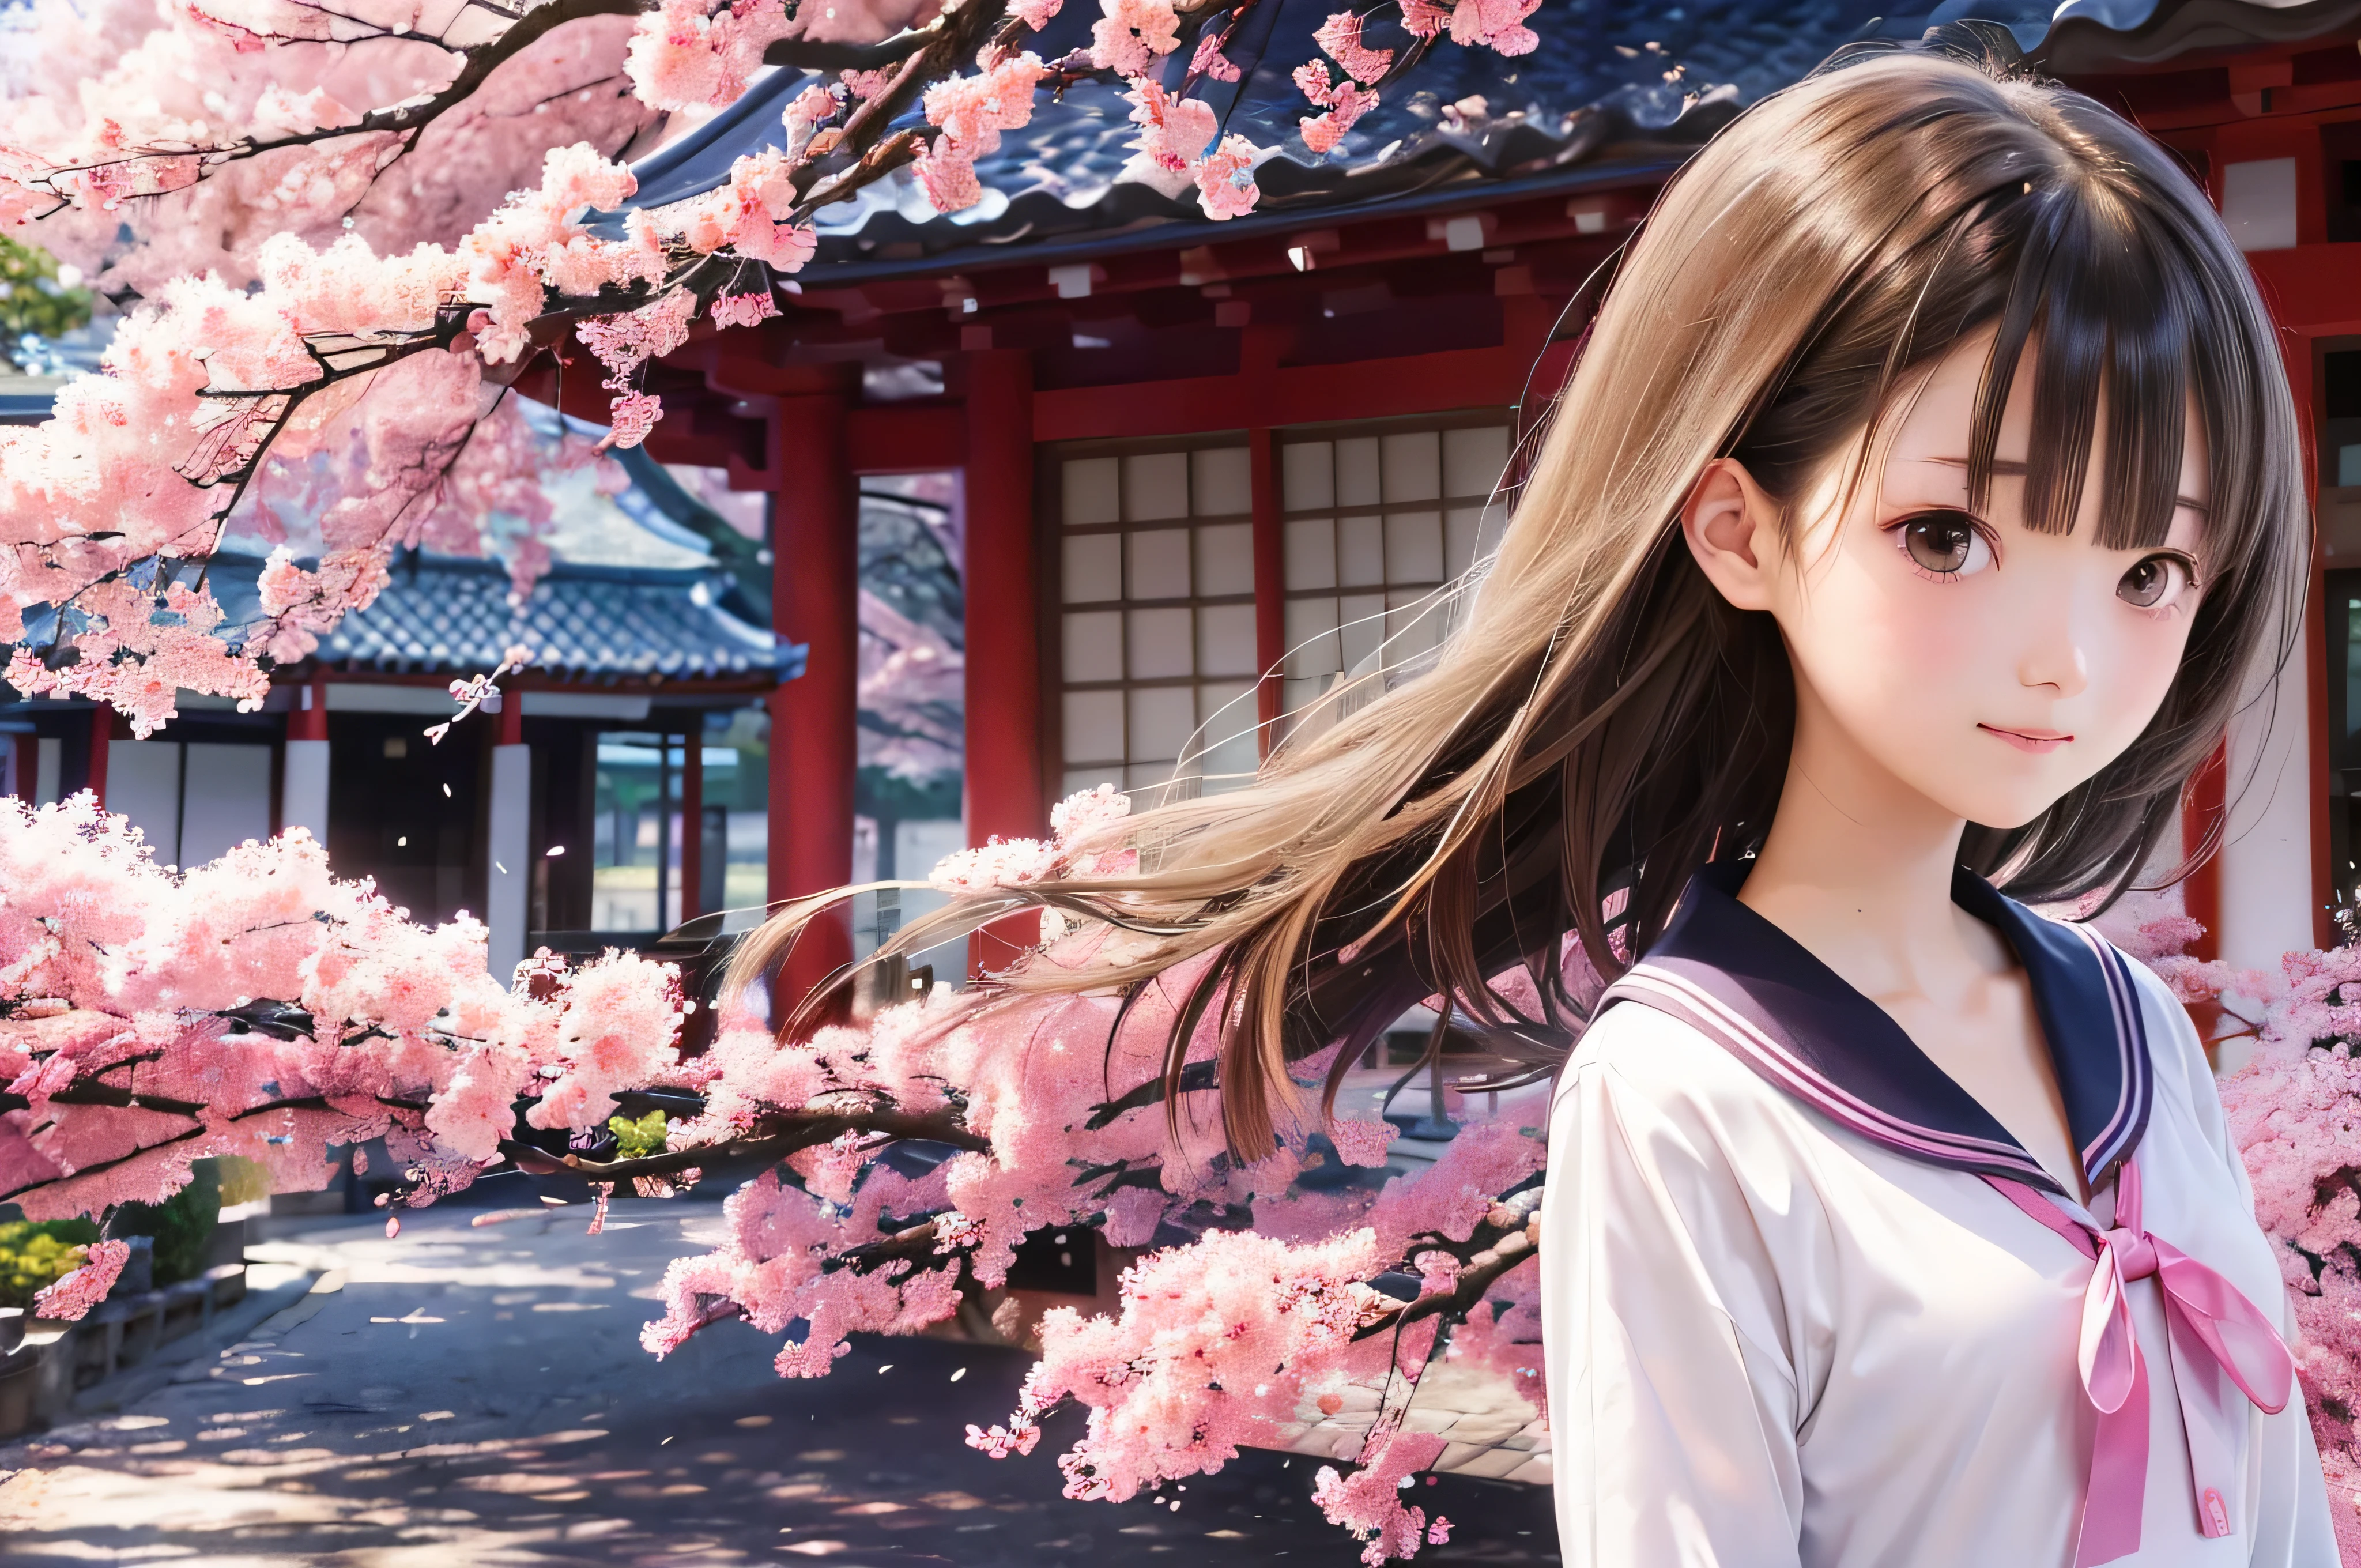 Portrait de style anime de lycéennes japonaises debout sous les fleurs de cerisier du printemps. elle regarde de côté, ses longs cheveux bruns soufflent au vent. La fille a une expression calme, Tout en regardant les fleurs de cerisier tomber illuminées par une douce lumière rose. ses yeux sont noirs et brillants, avec un sourire subtil. Elle porte une japonaise avec une blouse blanche et un cardigan bleu marine。, Brillant dans la douce lumière du soleil du printemps. La jeune fille est représentée petite dans le cadre. En arrière-plan, Il y a des branches floues de fleurs de cerisier rose vif. La scène respire la tranquillité, Brillant, et ambiance paisible, Vous rappelle les beaux moments de l&#39;anime japonais.